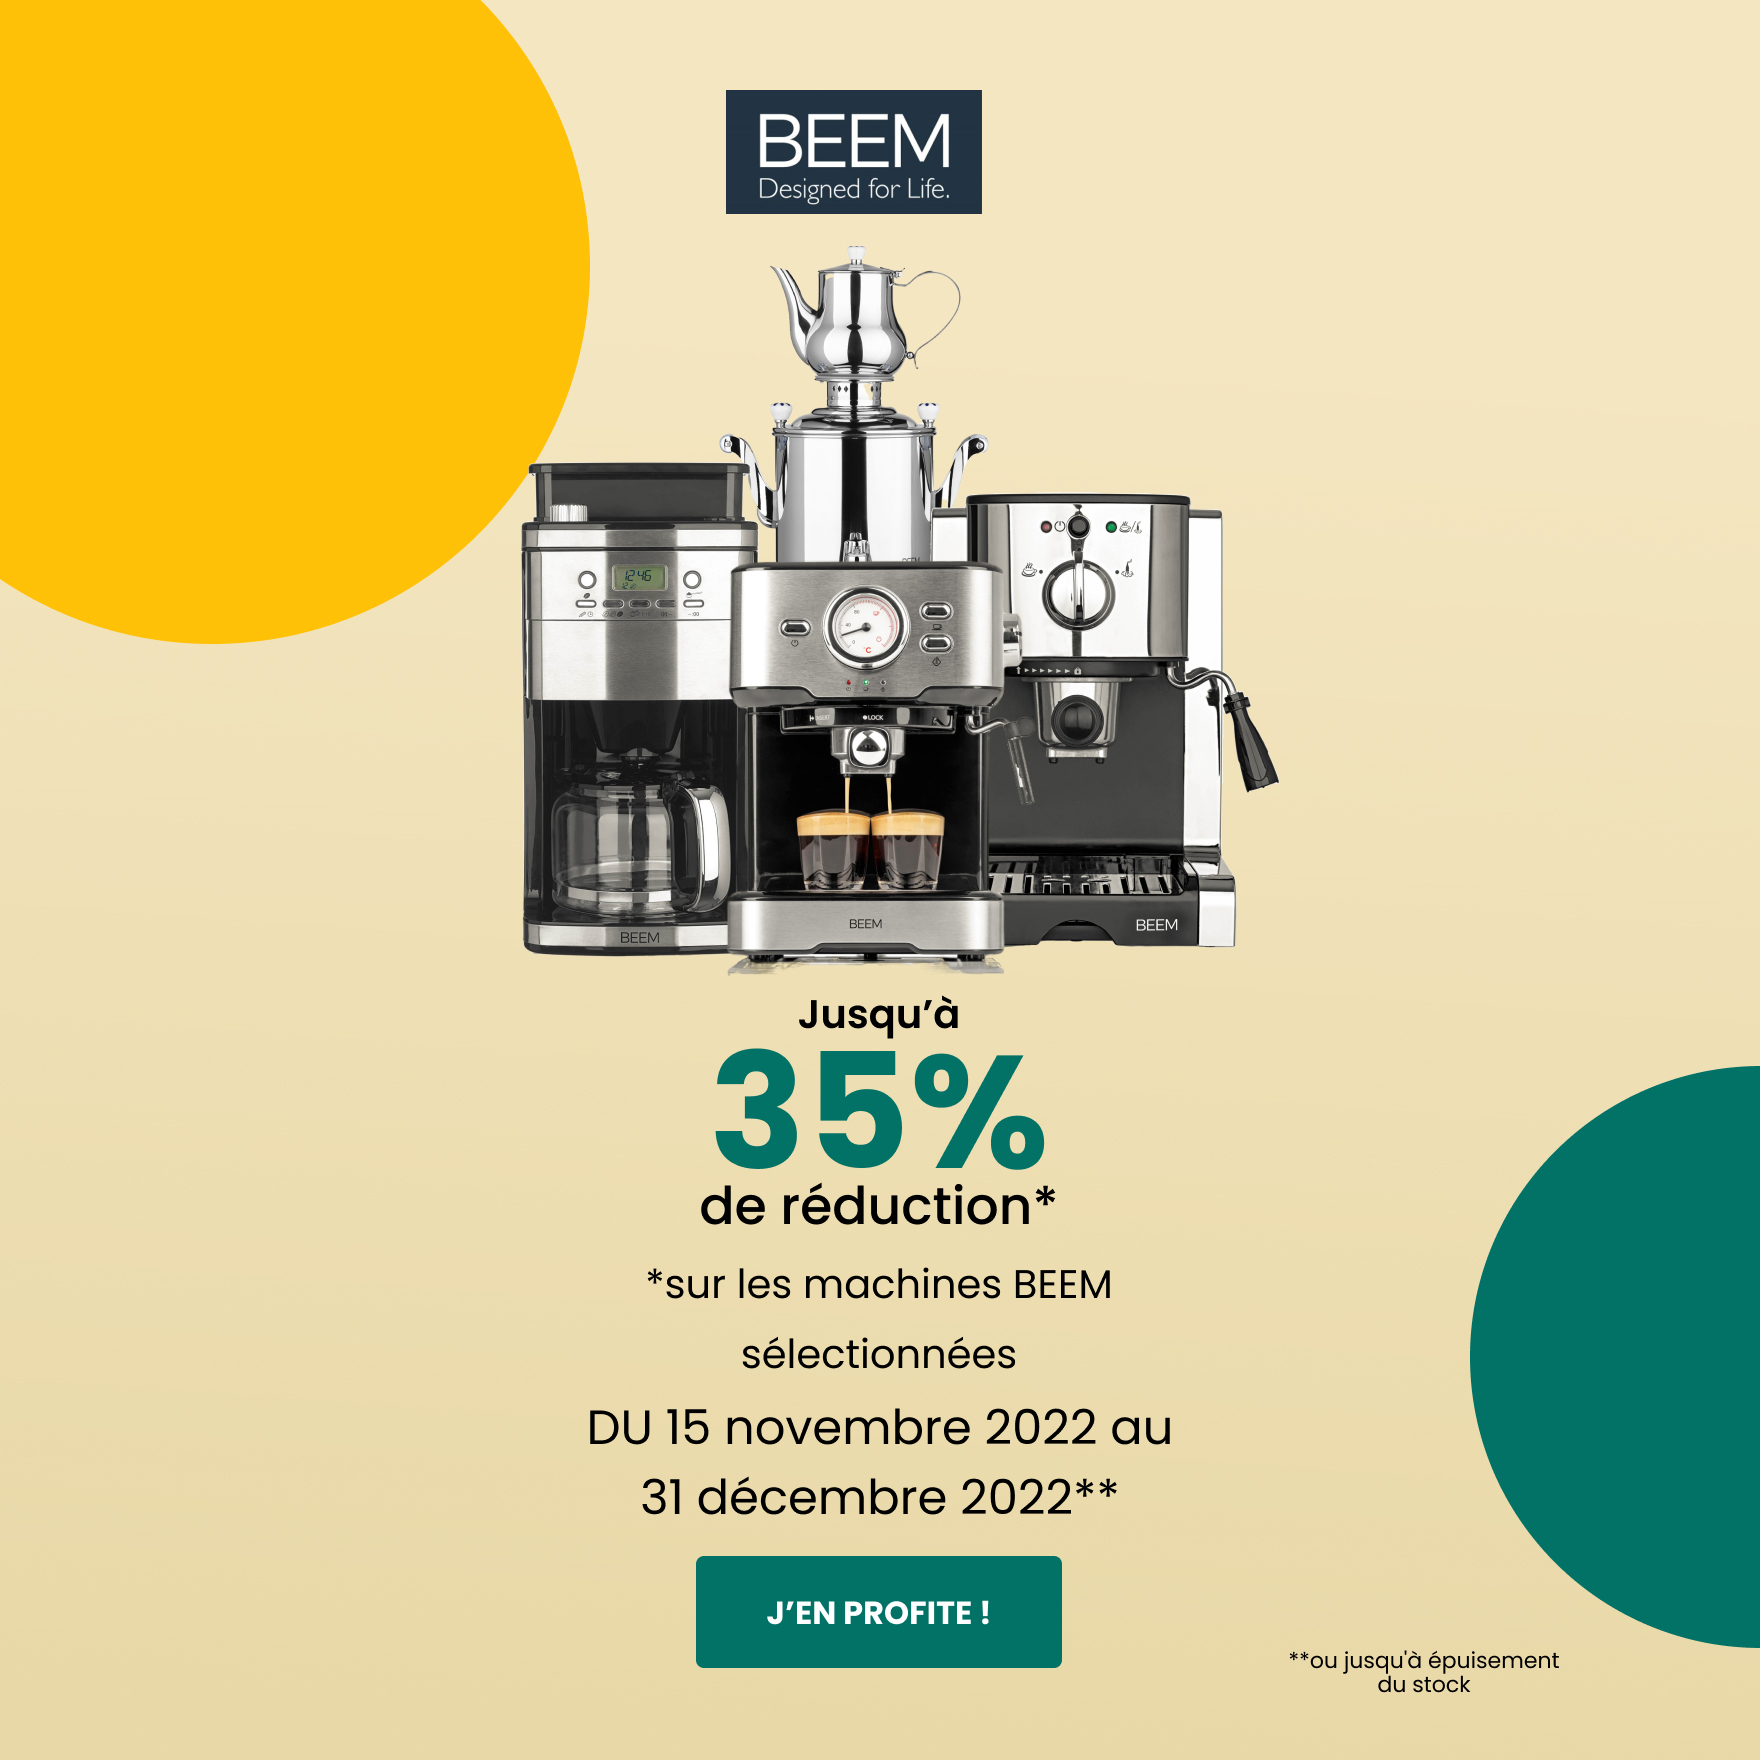 Jusqu’à 35% de réduction sur les machines BEEM sélectionnées